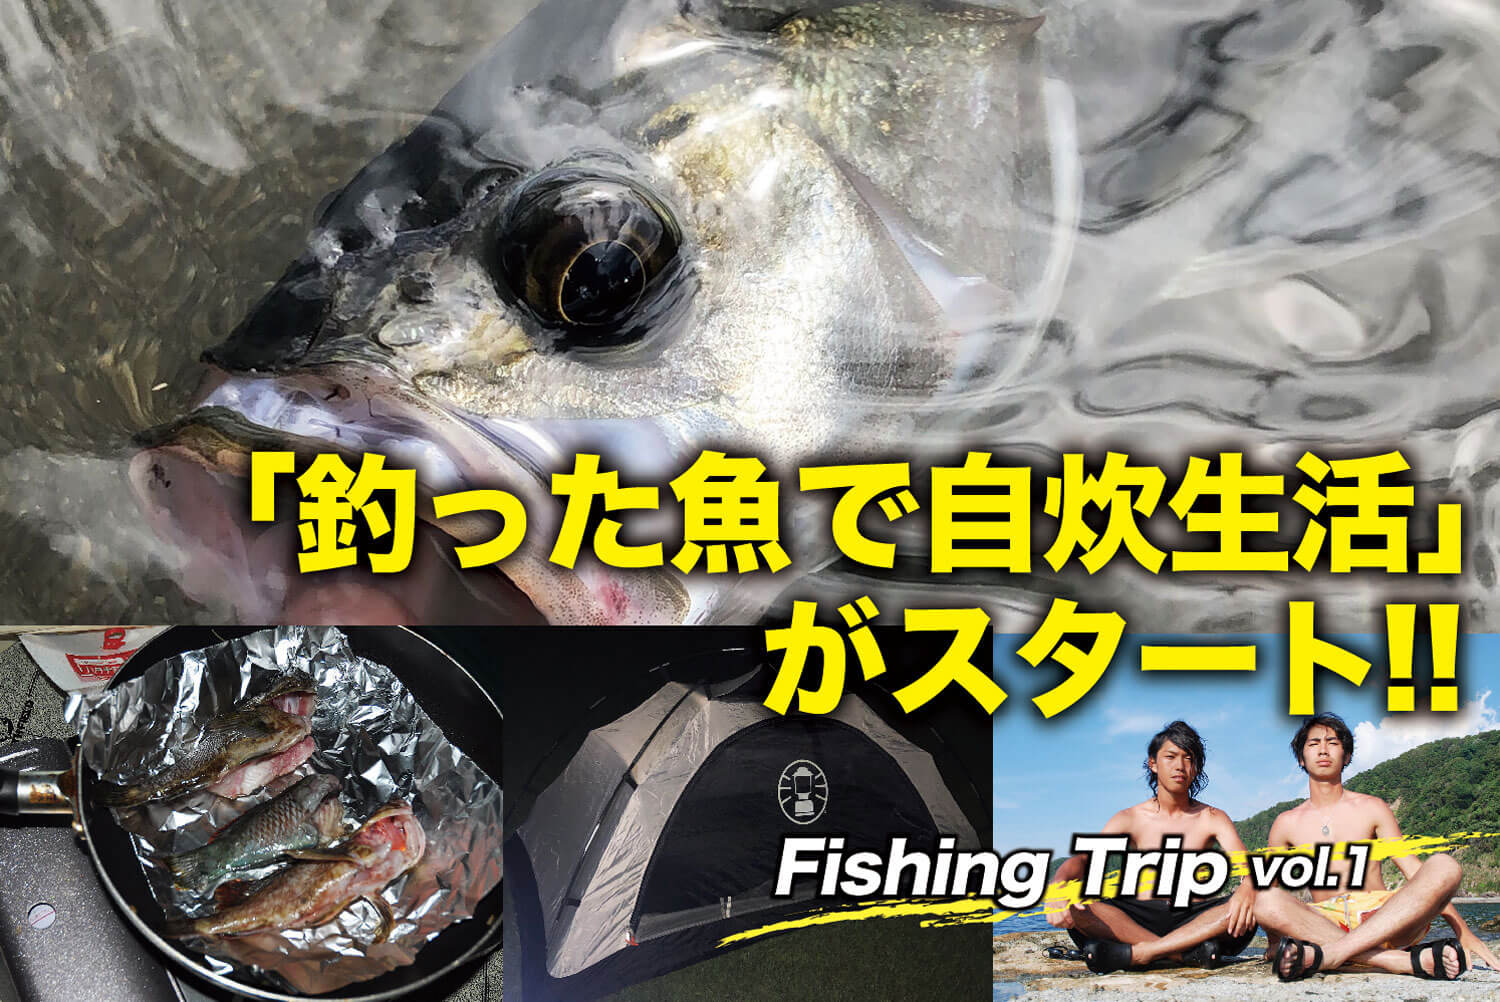 釣った魚で自炊生活 がスタート Fishing Trip Vol 1 Swマガジンweb 海のルアーマンのための総合情報メディア